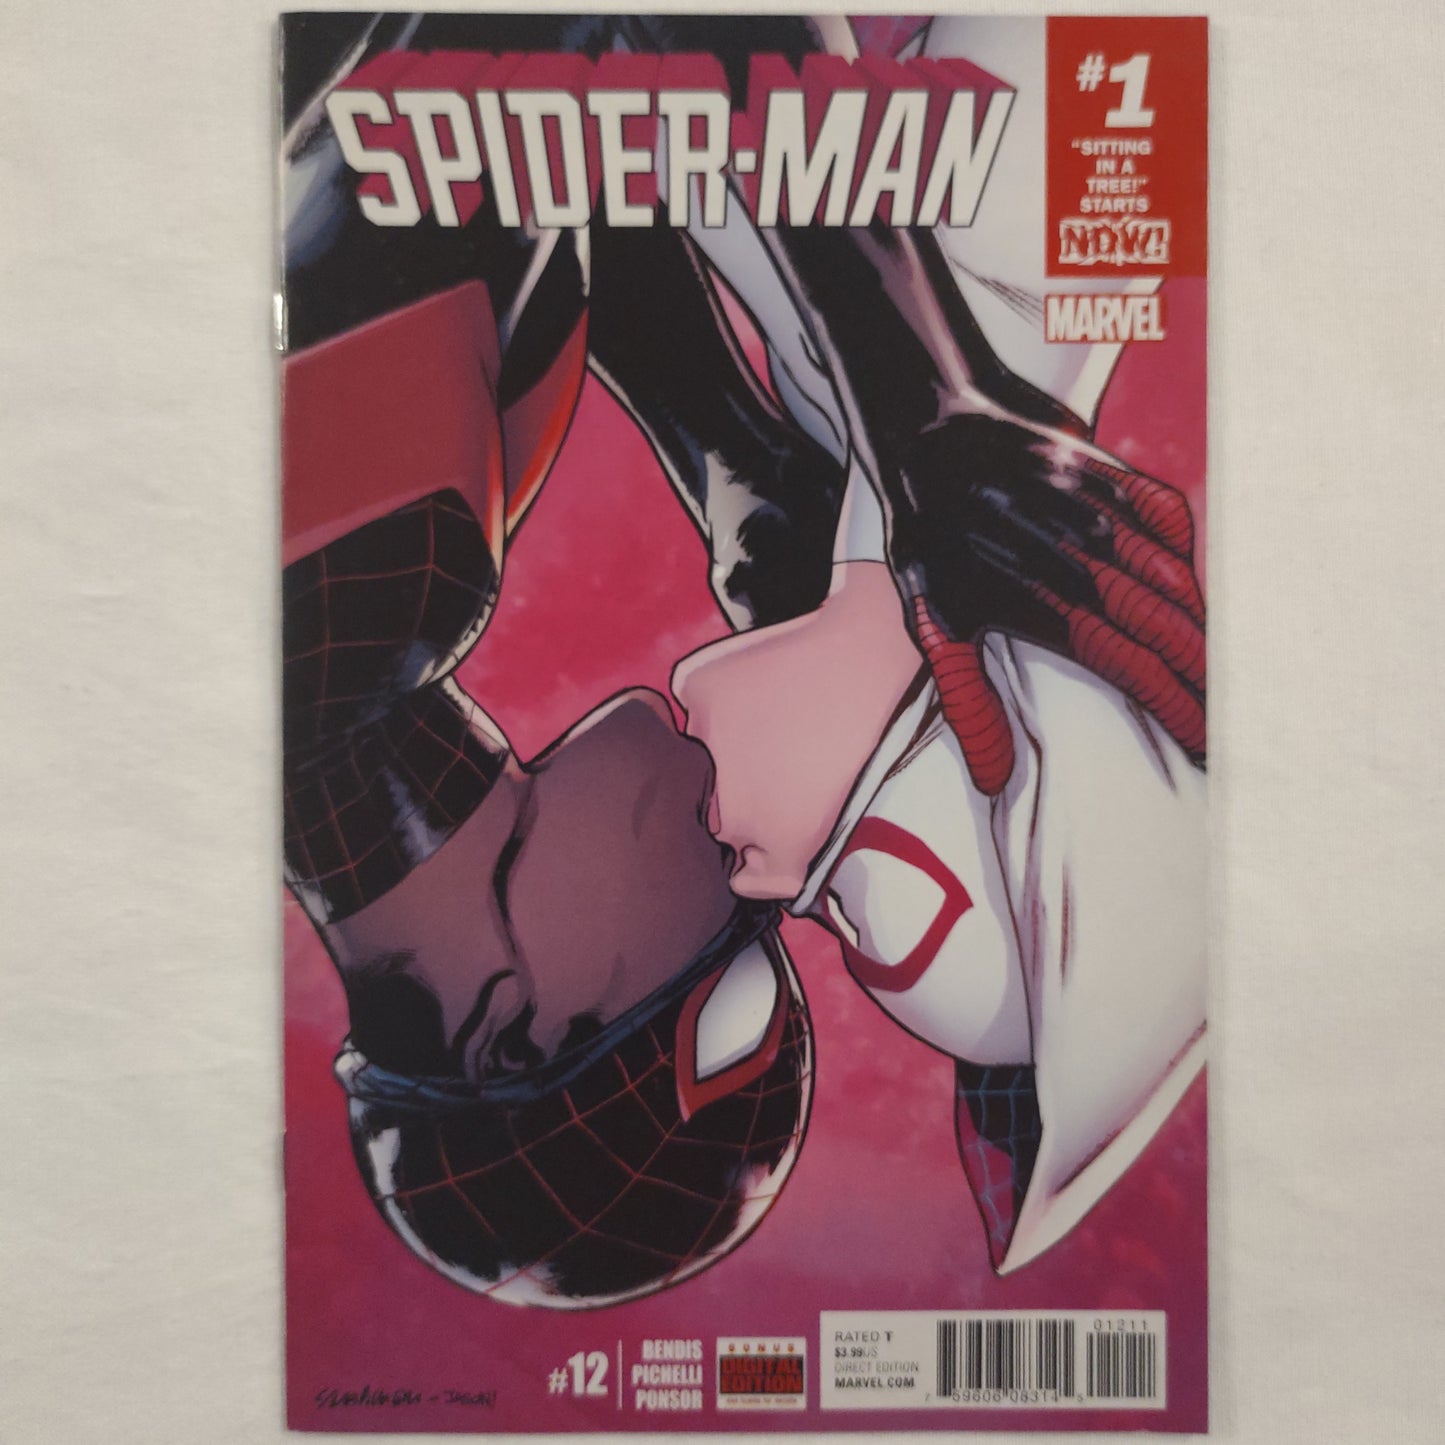 Spider-man #12